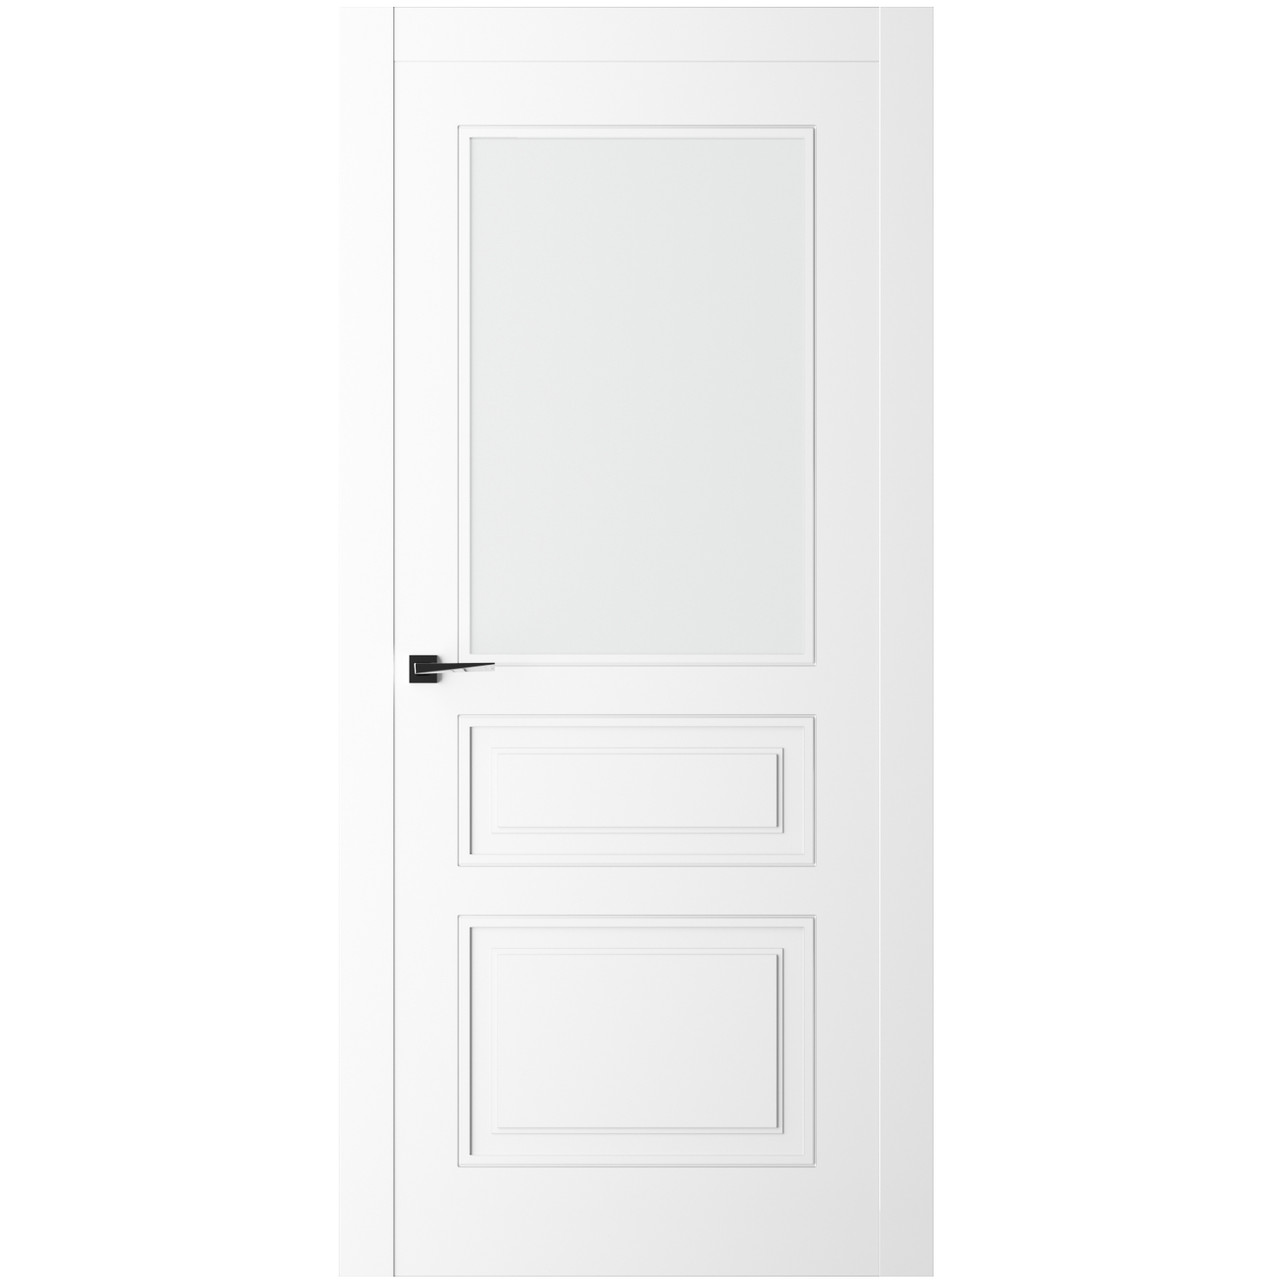 Дверь межкомнатная Ликорн Плоско-фрезерованная ДКПФГ.3 1900*700*40мм (без замков и петель, с телеск. коробкой